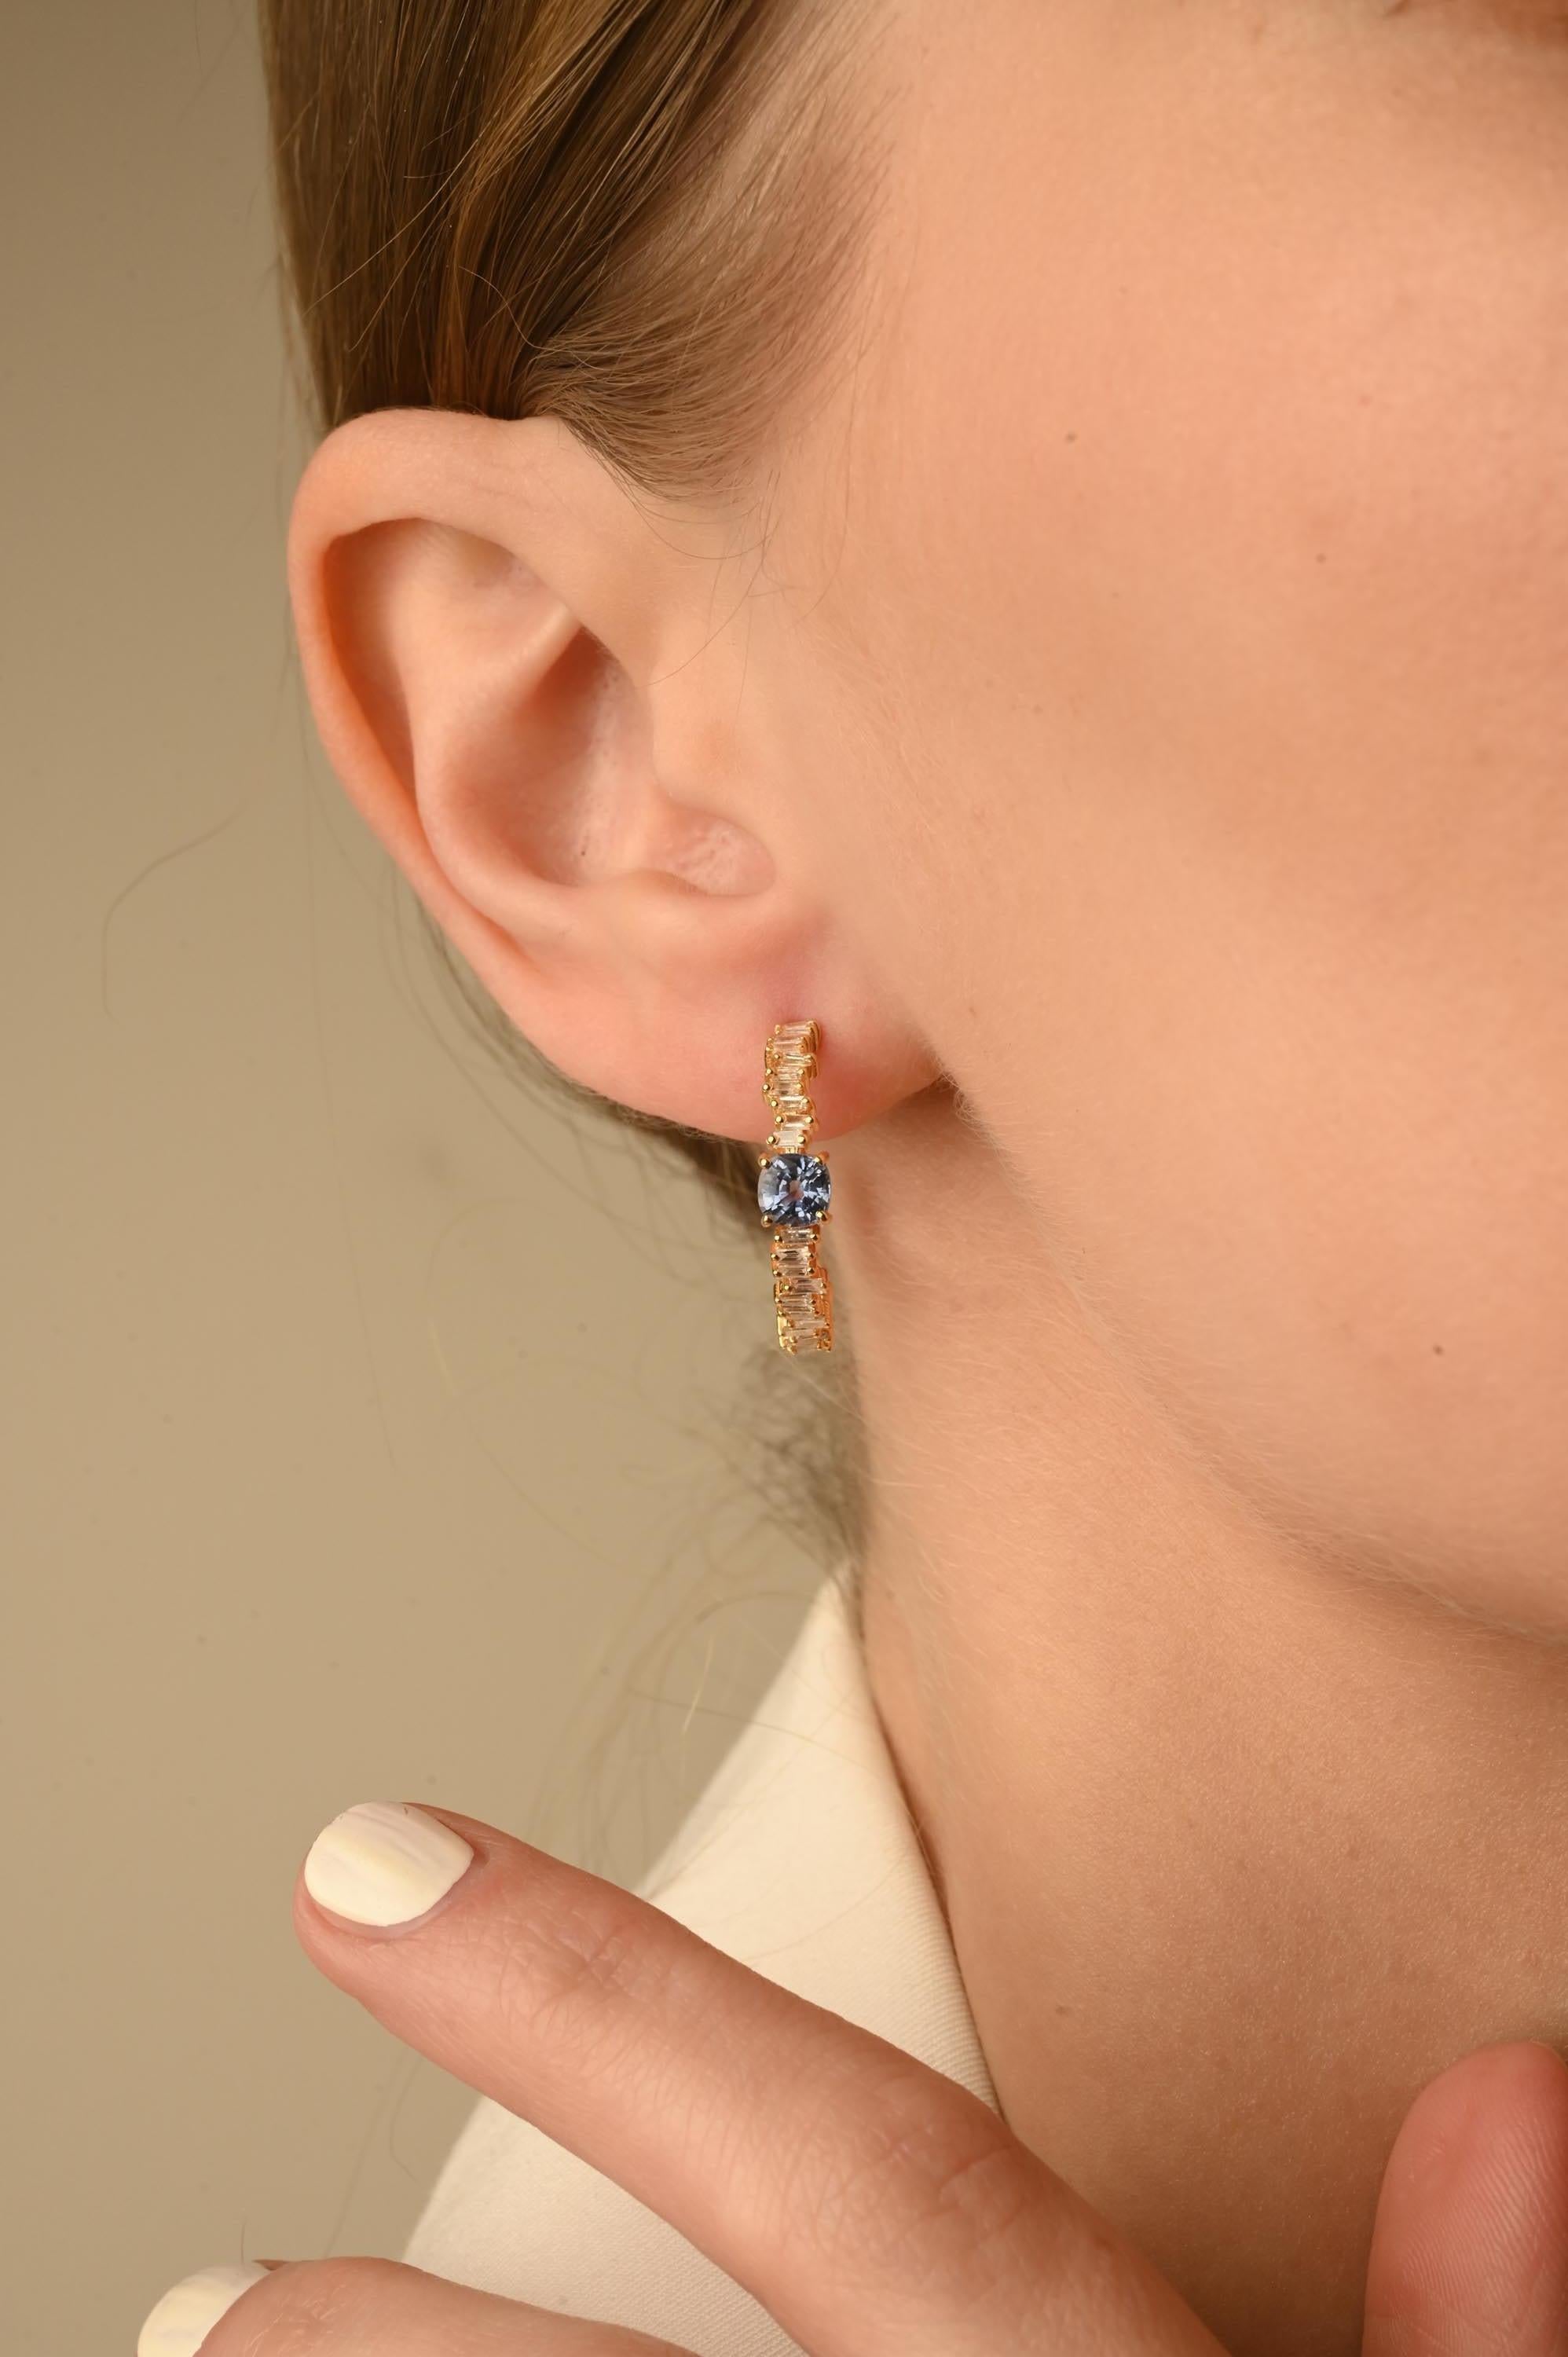 Boucles d'oreilles saphir bleu en or 14 carats avec diamants pour mettre en valeur votre look. Vous aurez besoin de boucles d'oreilles ouvertes pour mettre en valeur votre look. Ces boucles d'oreilles créent un look étincelant et luxueux avec une